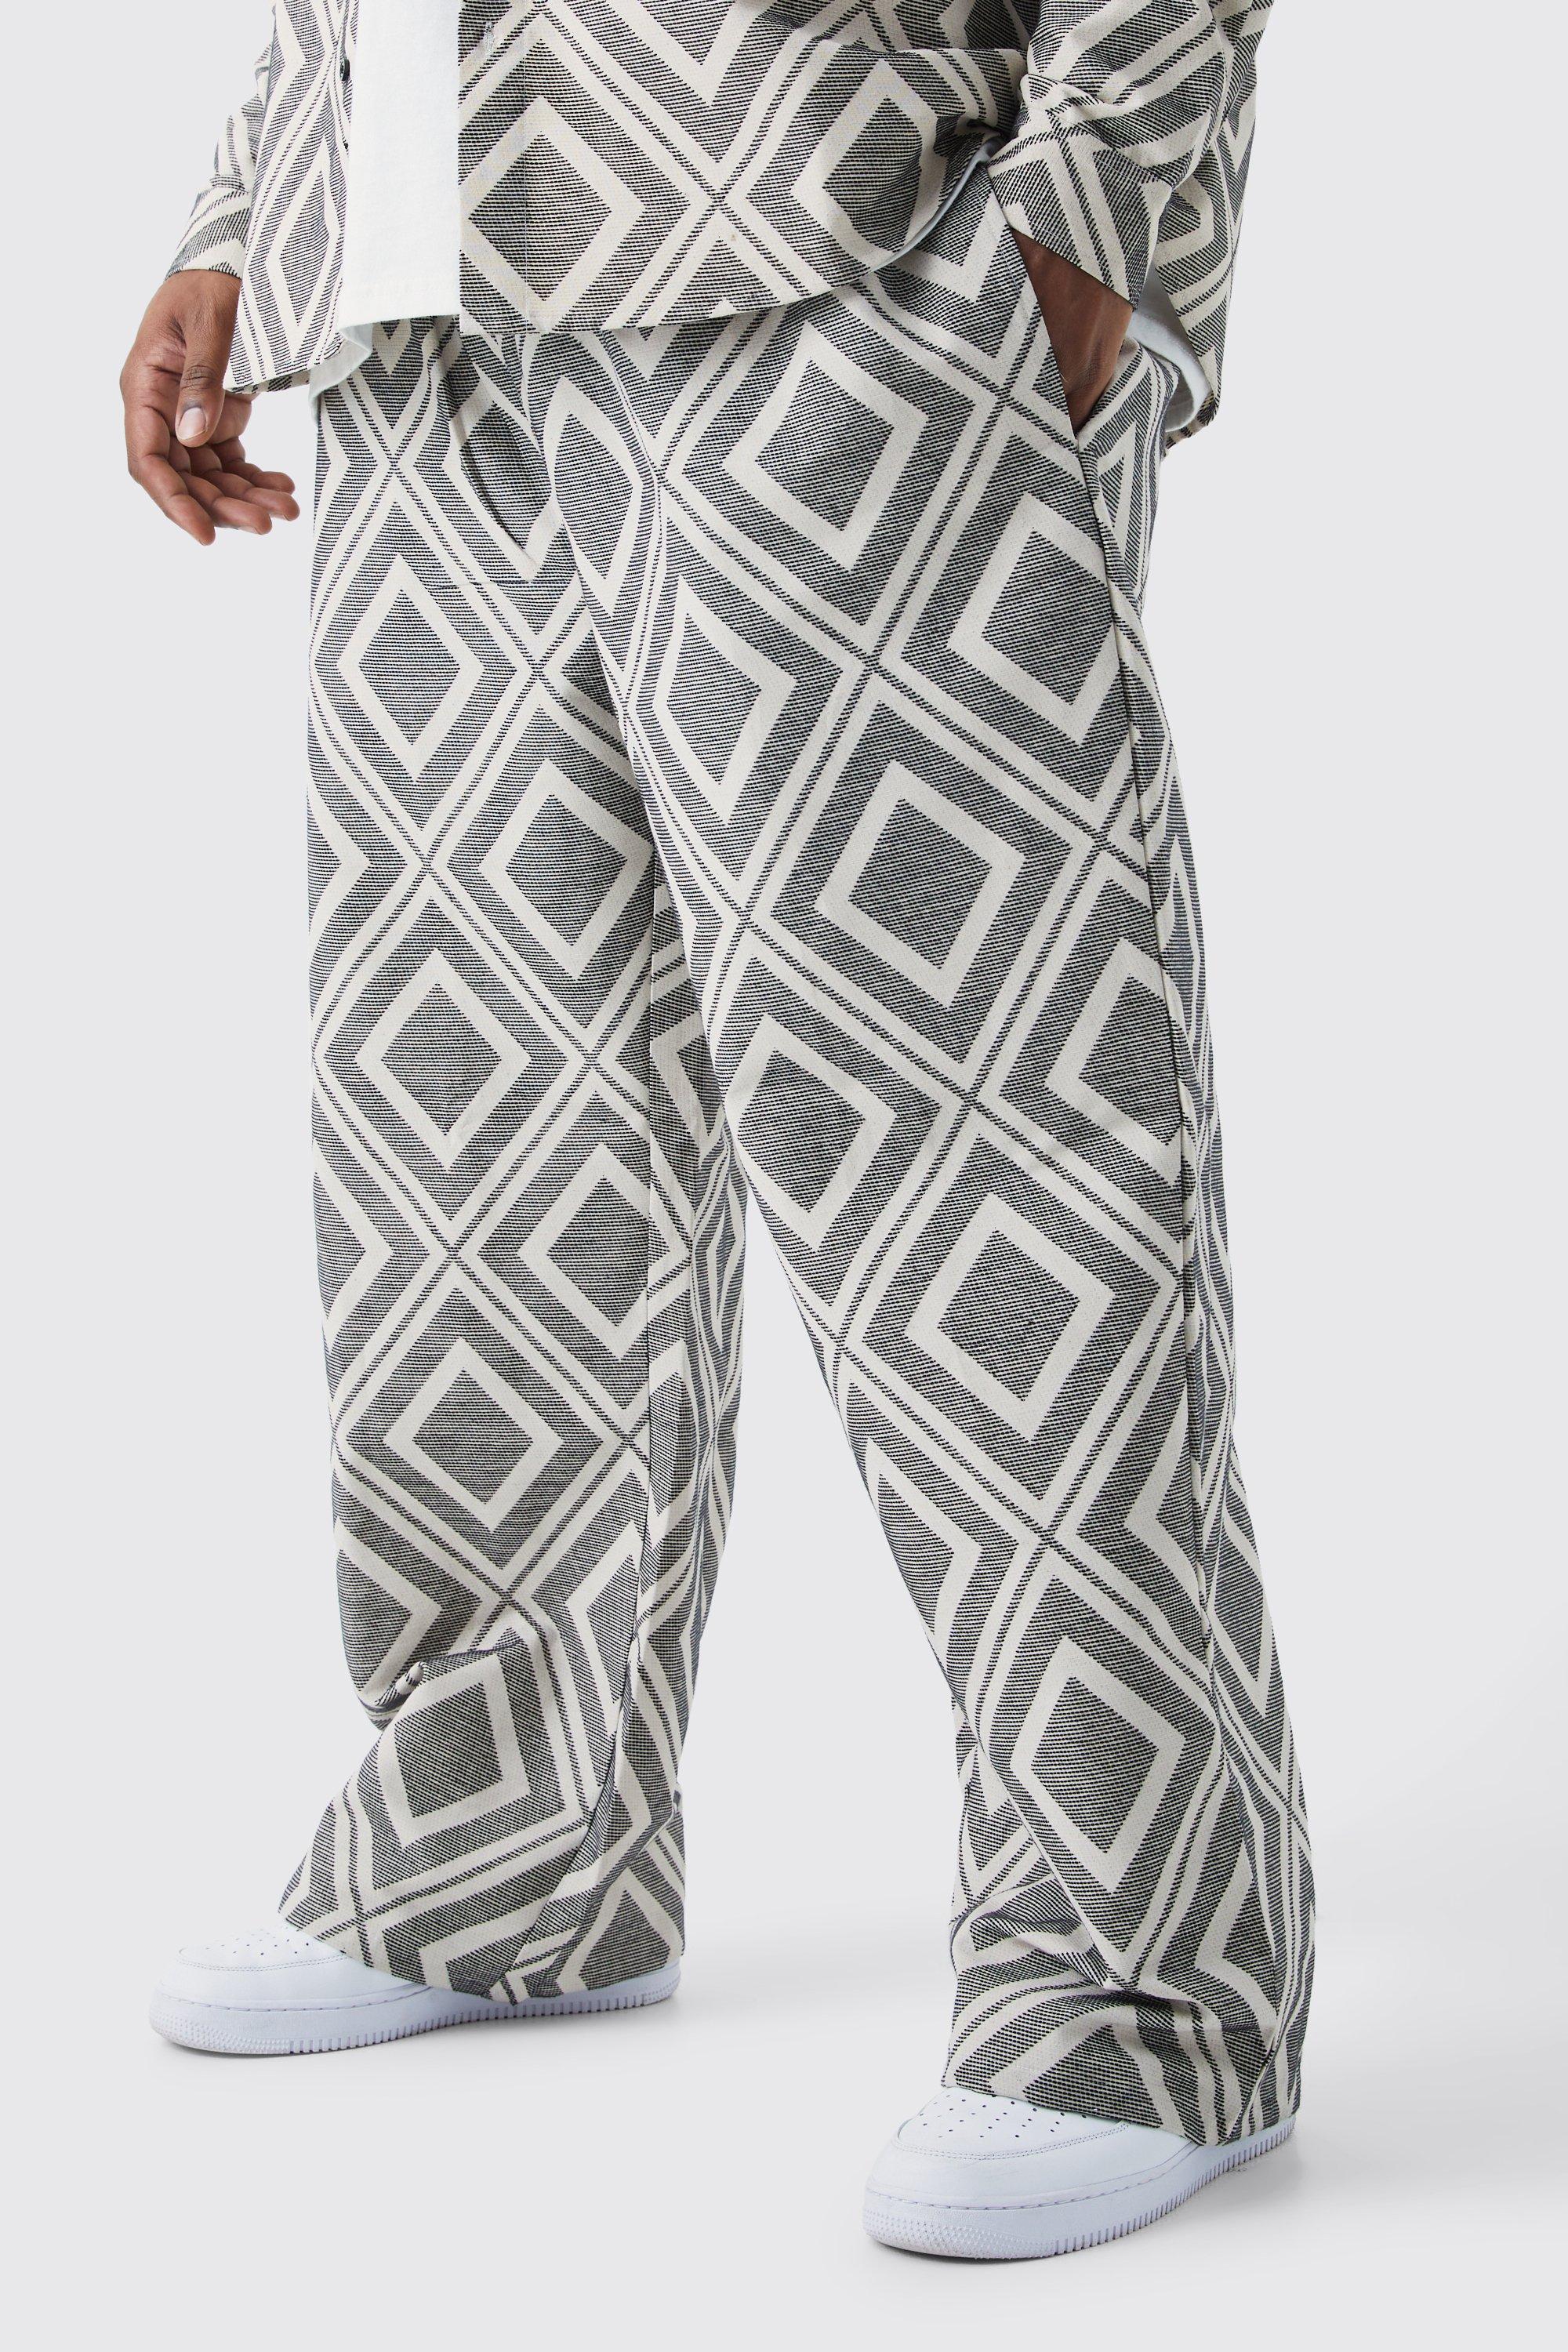 grande taille - pantalon large à motif jacquard homme - gris - xxxxxl, gris